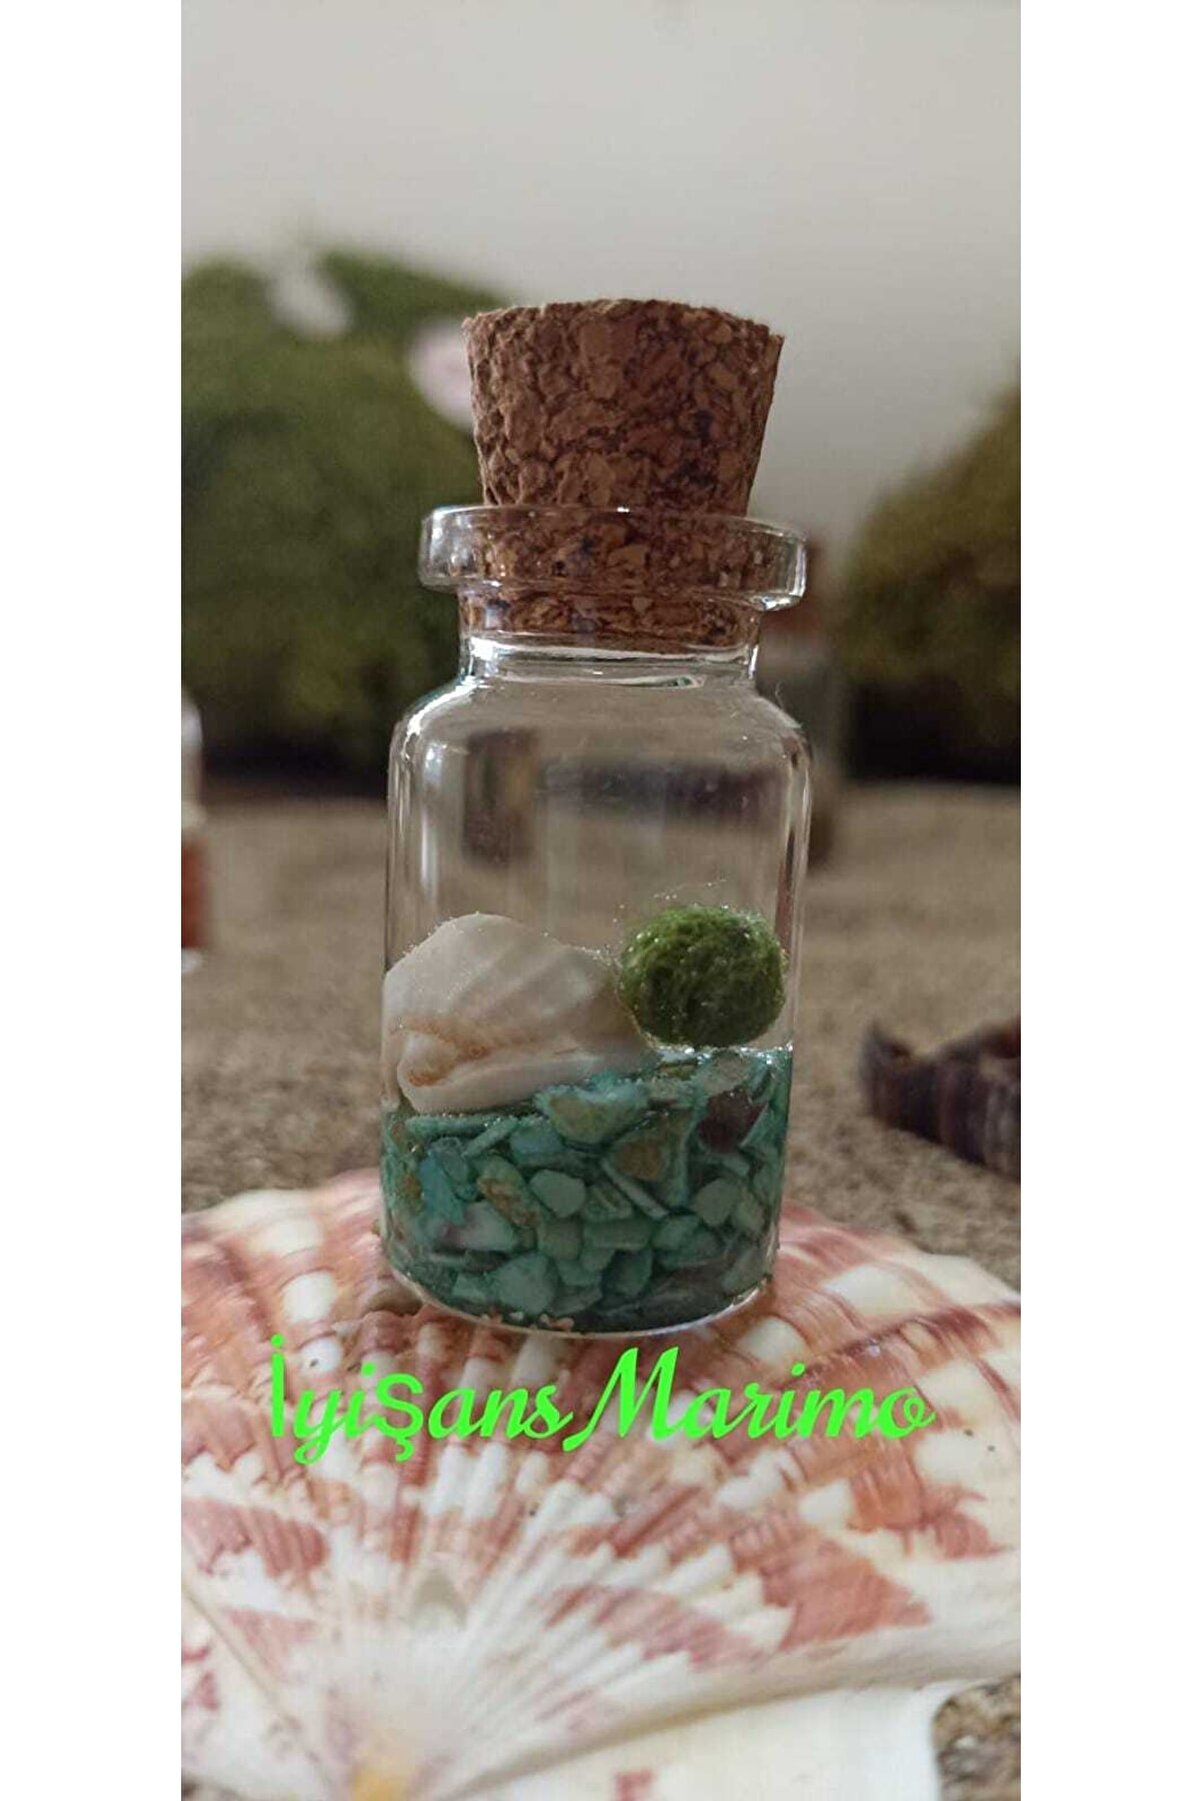 İyişans Marimo Şans Kazandıran Marimo Şans Yosunu Canlı Teraryumu Mossball Mini Pet Terrarium(5*3CM) Mavi Renk